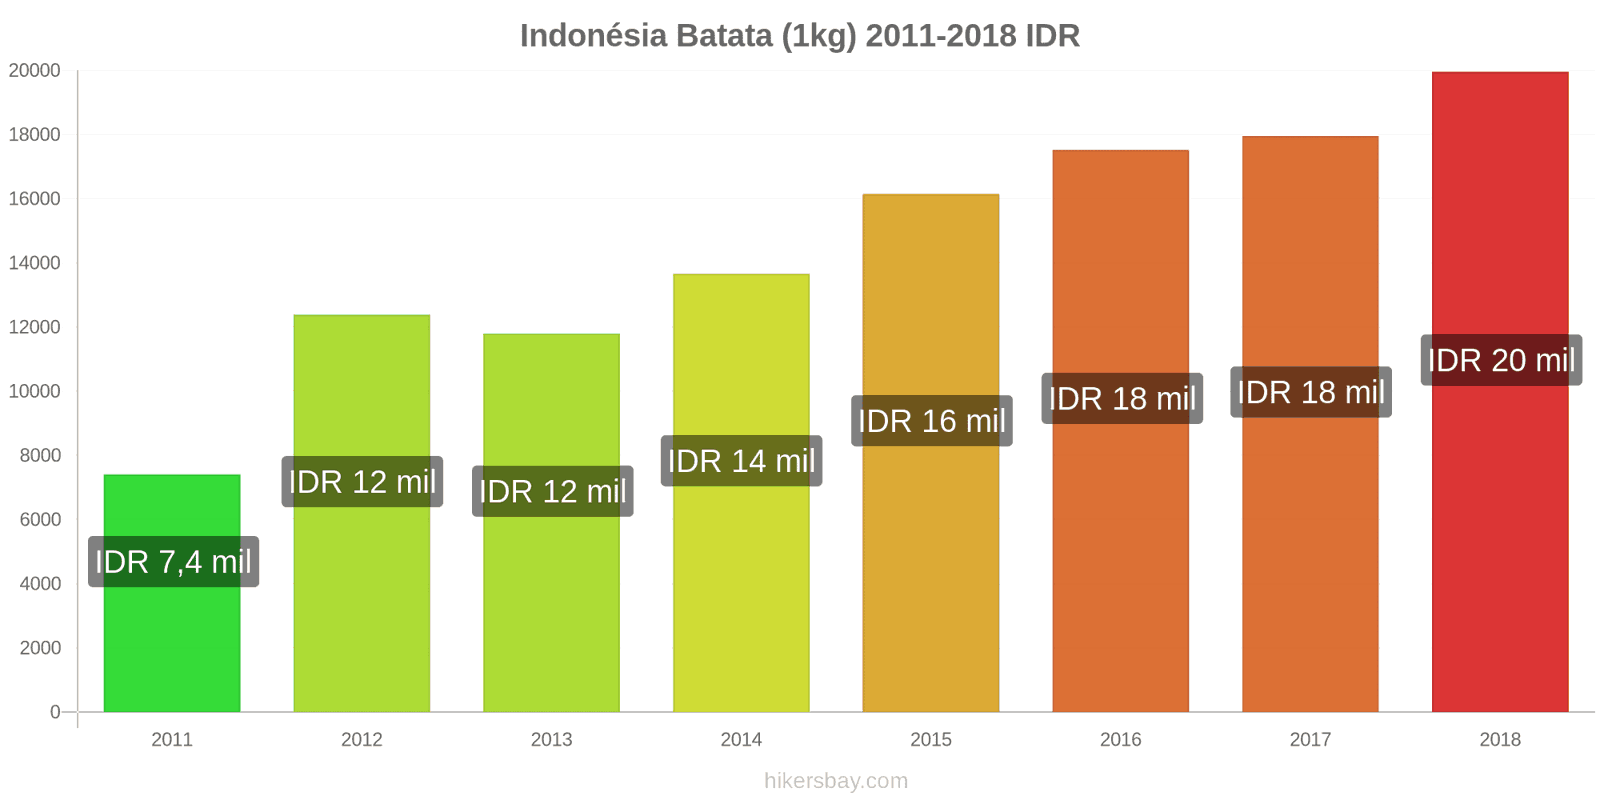 Indonésia mudanças de preços Batatas (1kg) hikersbay.com